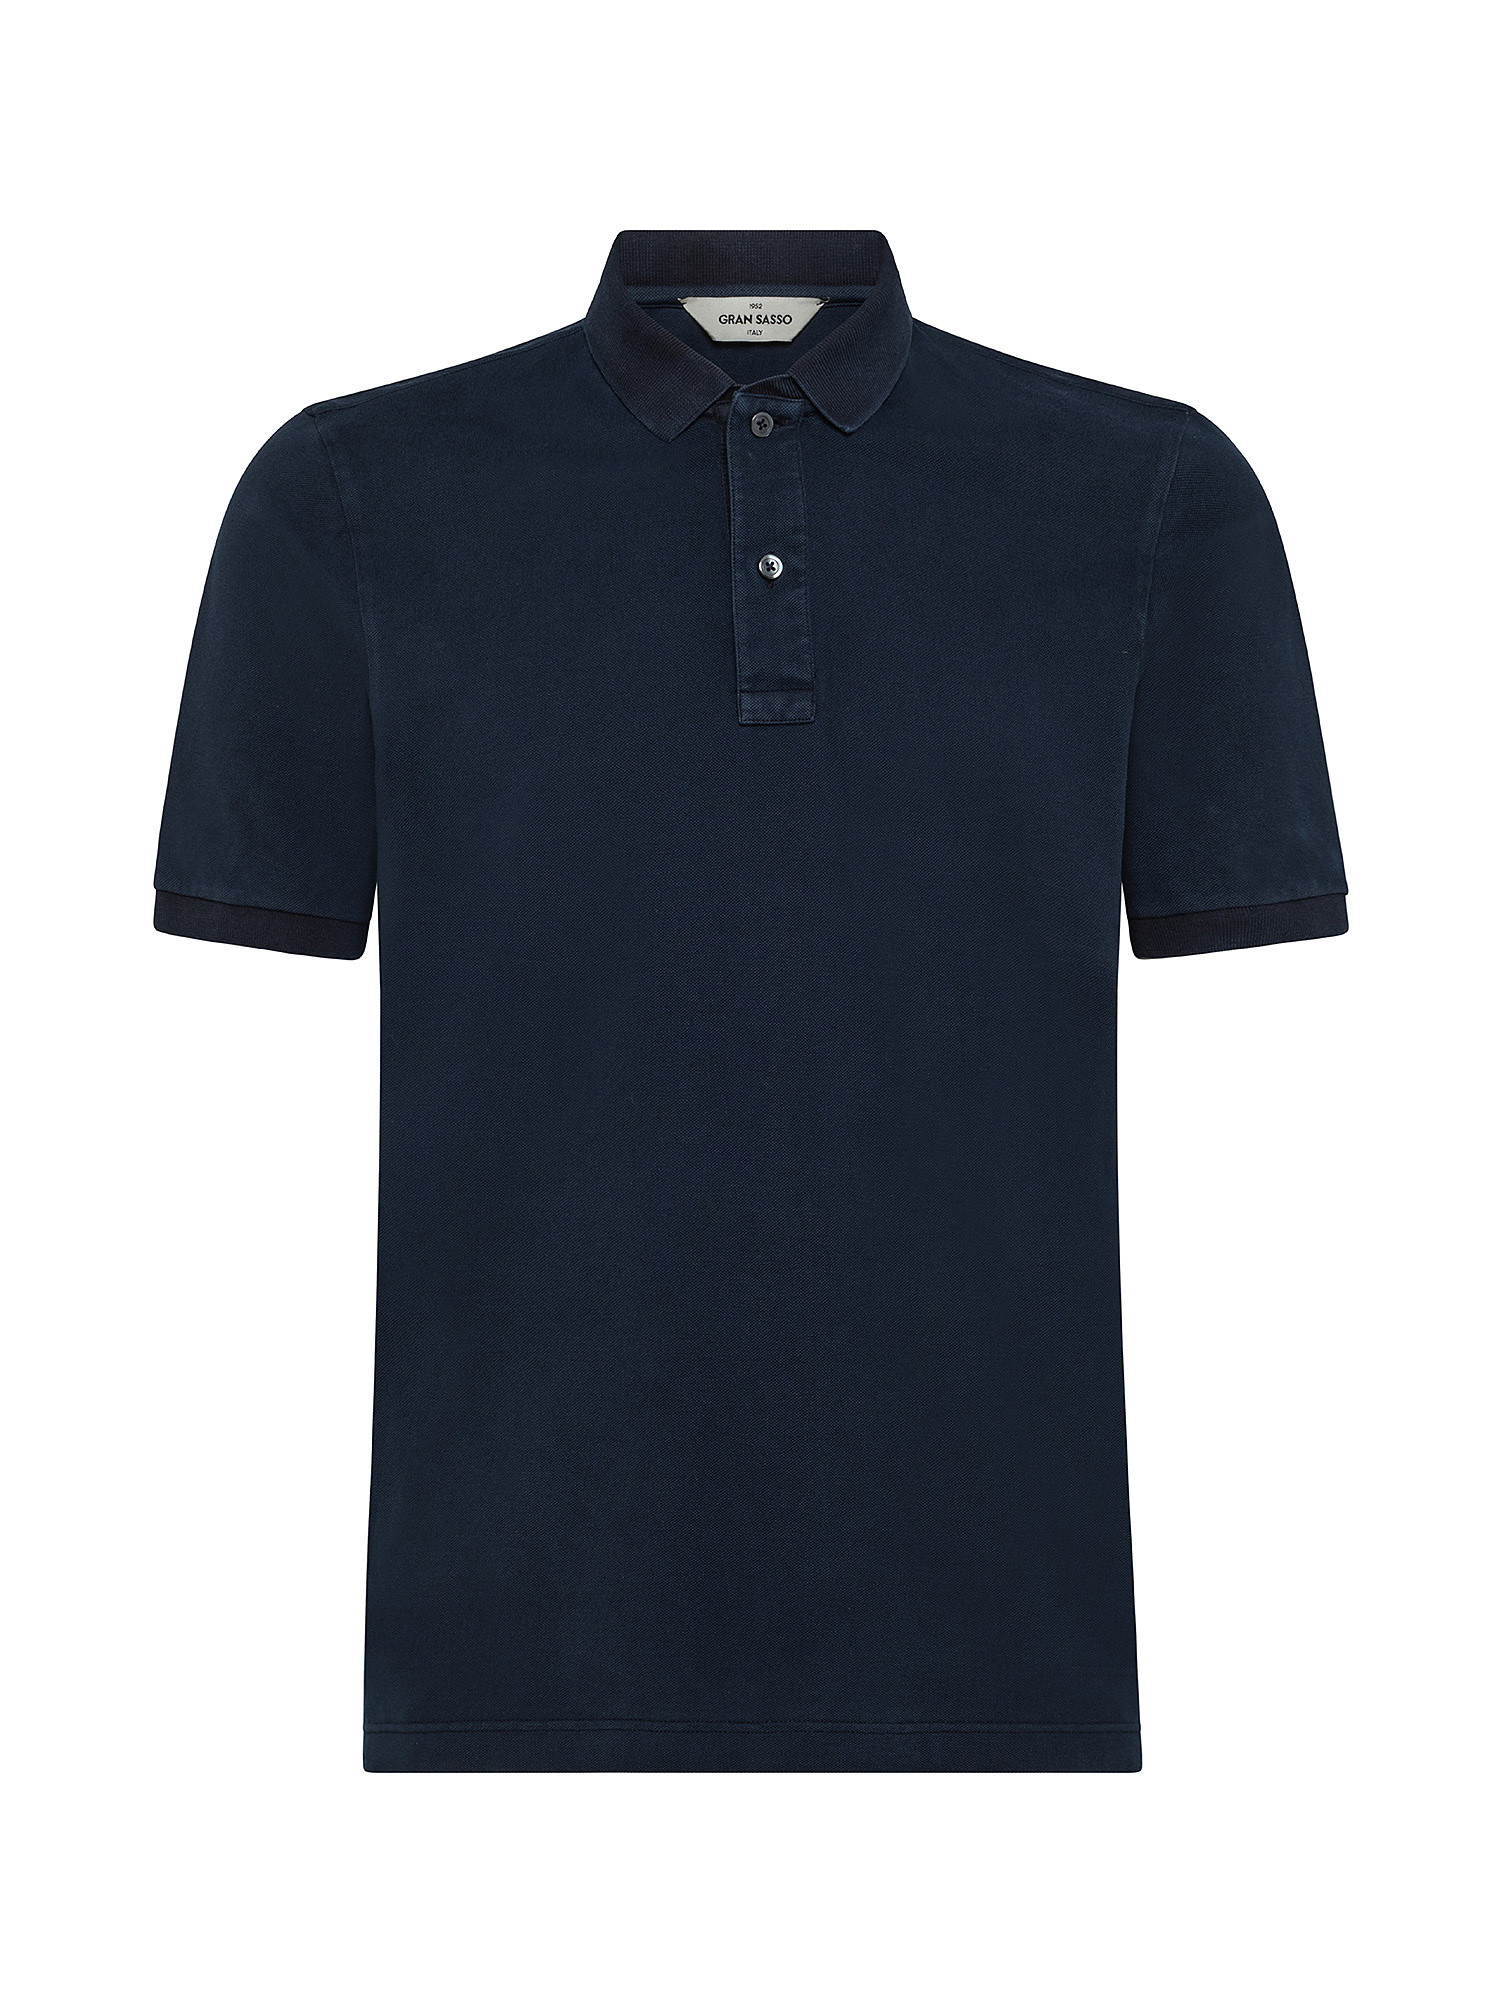 Vintage effect short sleeve polo shirt, Dark Blue, large image number 0